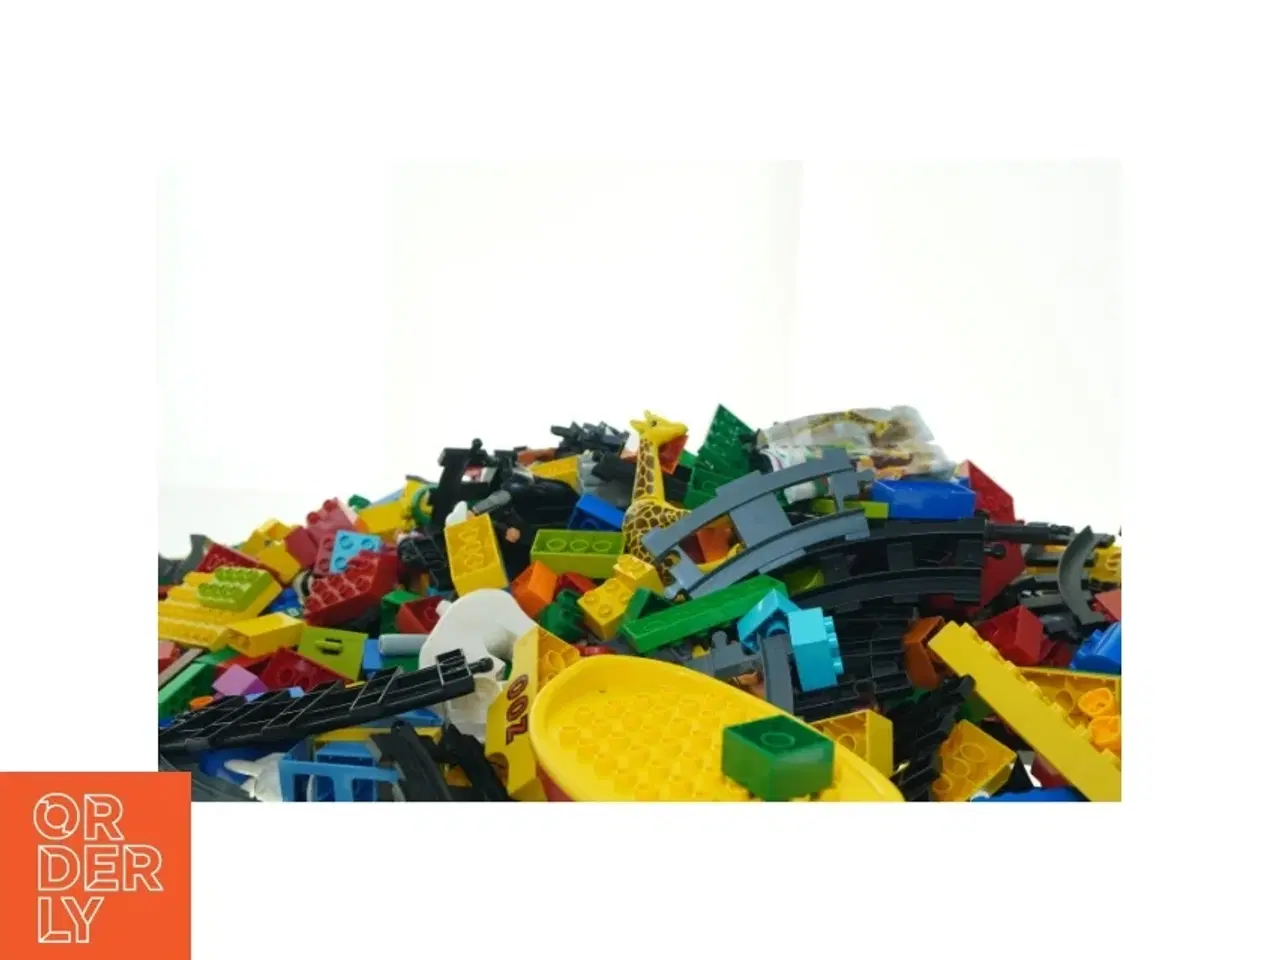 Billede 2 - Blandede LEGO klodser fra Lego (str. 58 x 40 cm)